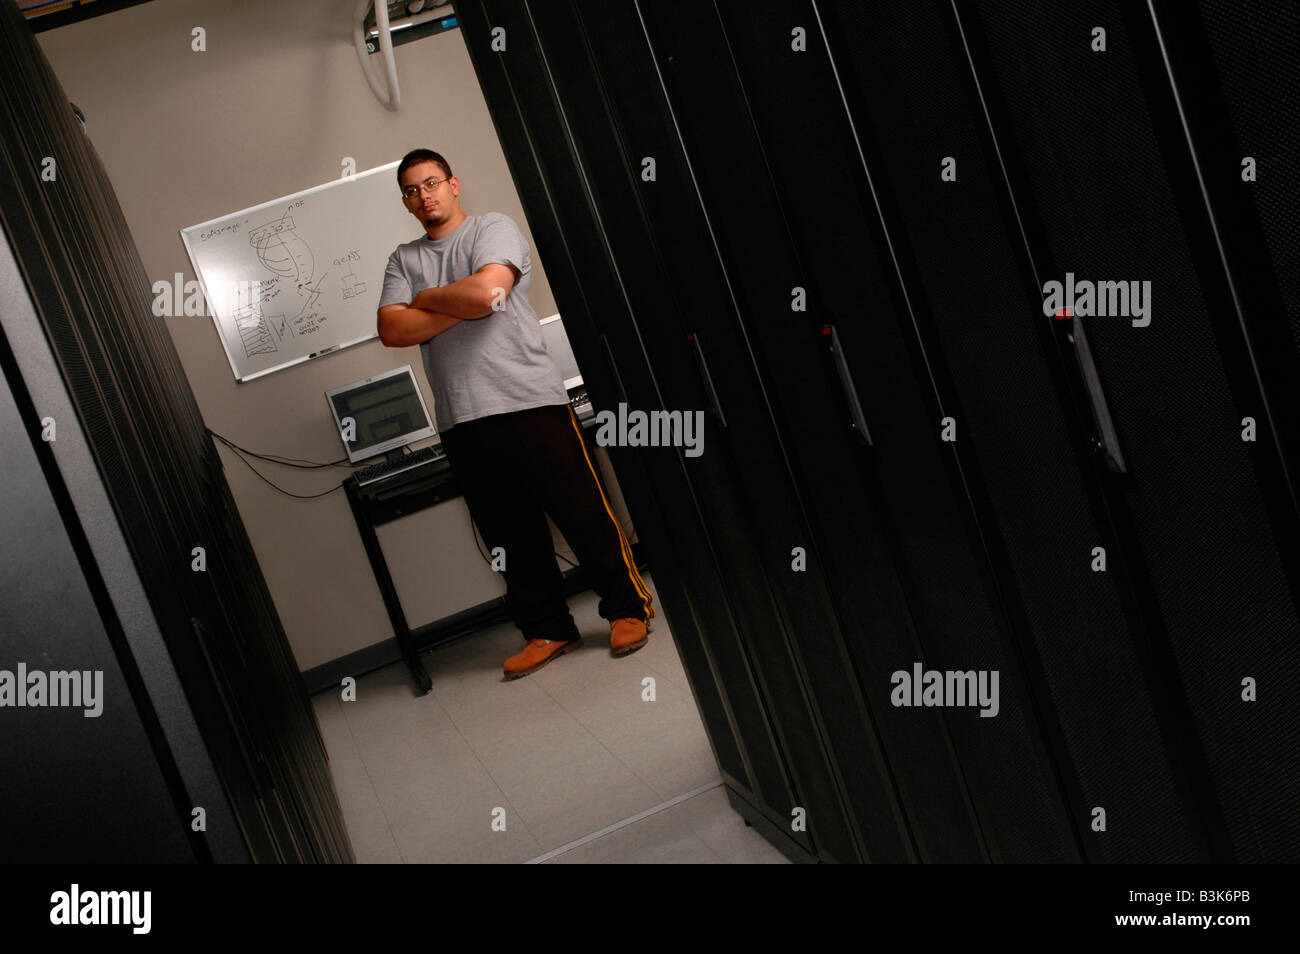 Technicien en informatique hispanique dans un network server room Banque D'Images